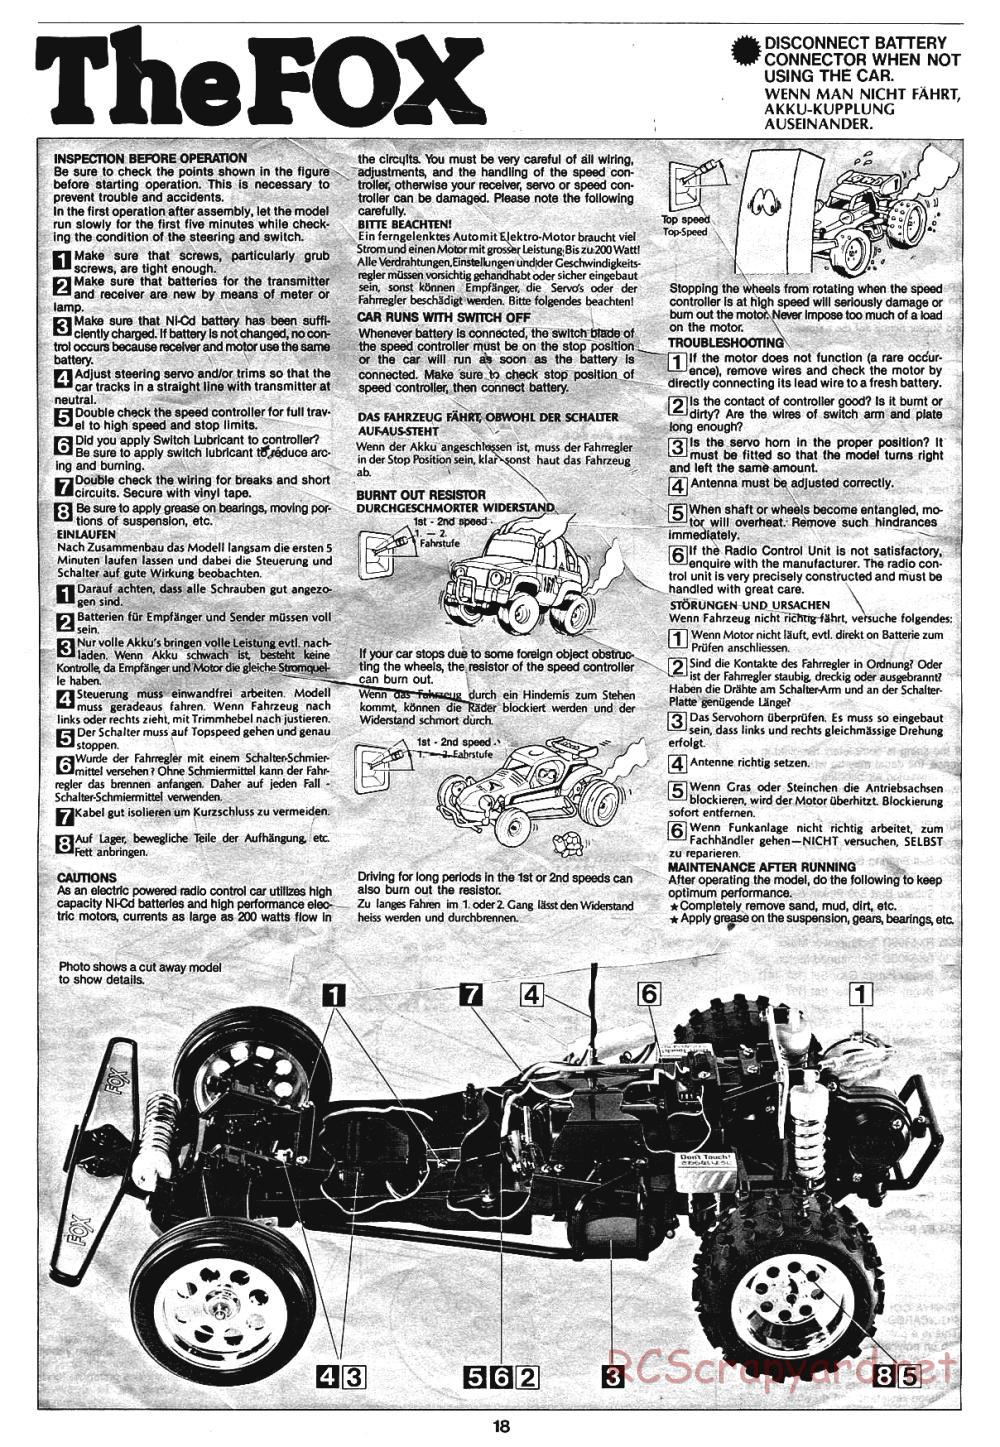 Tamiya - The Fox - 58051 - Manual - Page 18